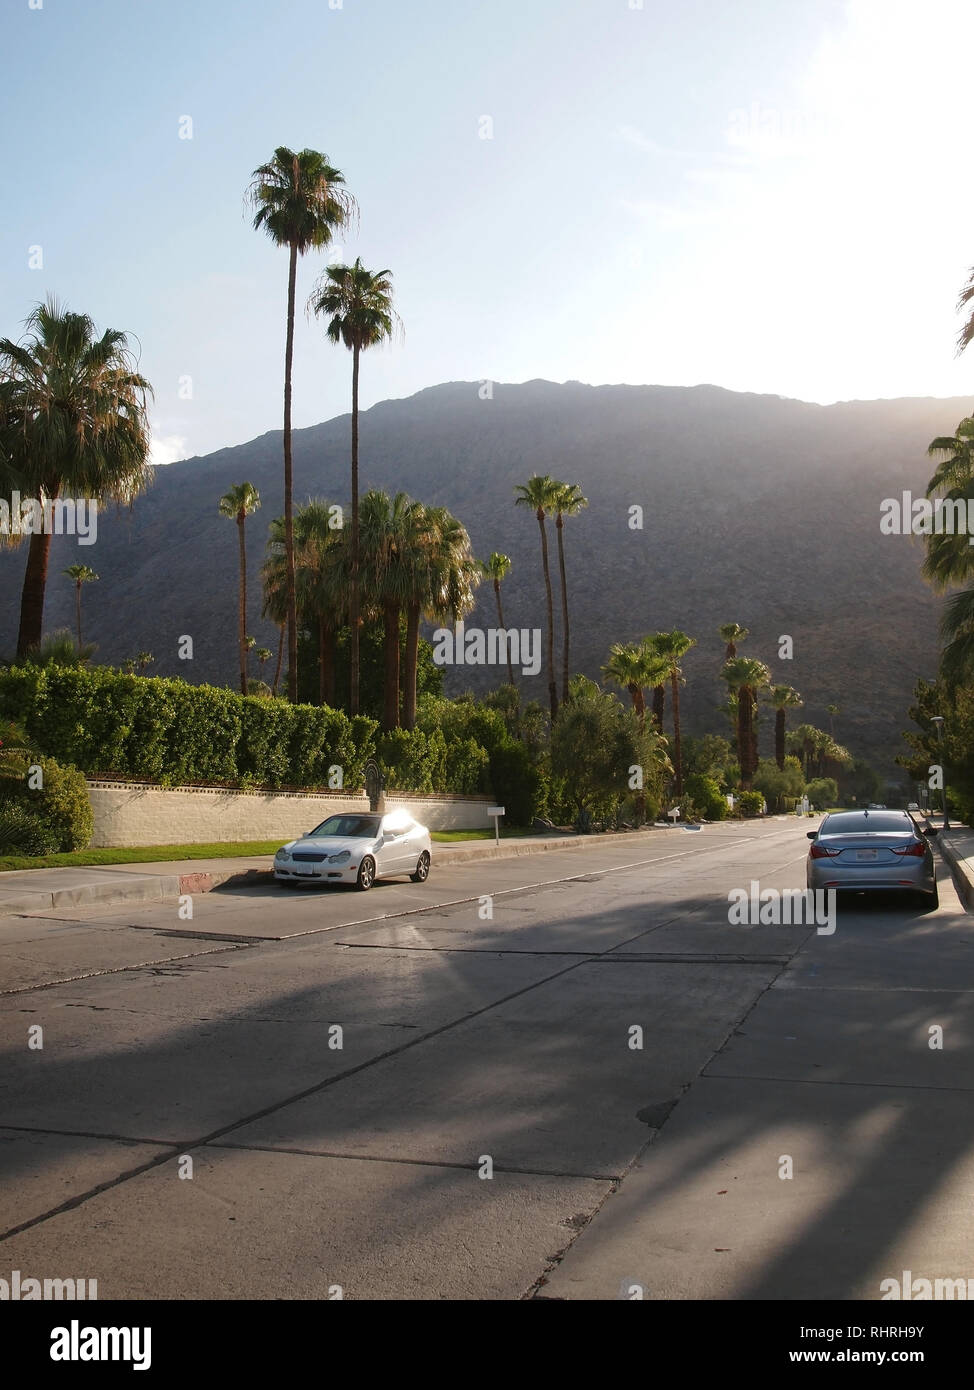 Ein Palm mit Bäumen gesäumten Straße durch ein Wohnquartier in Palm Springs, Kalifornien, am späten Nachmittag in der Nähe des Sunset mit Bergen im Ba Stockfoto